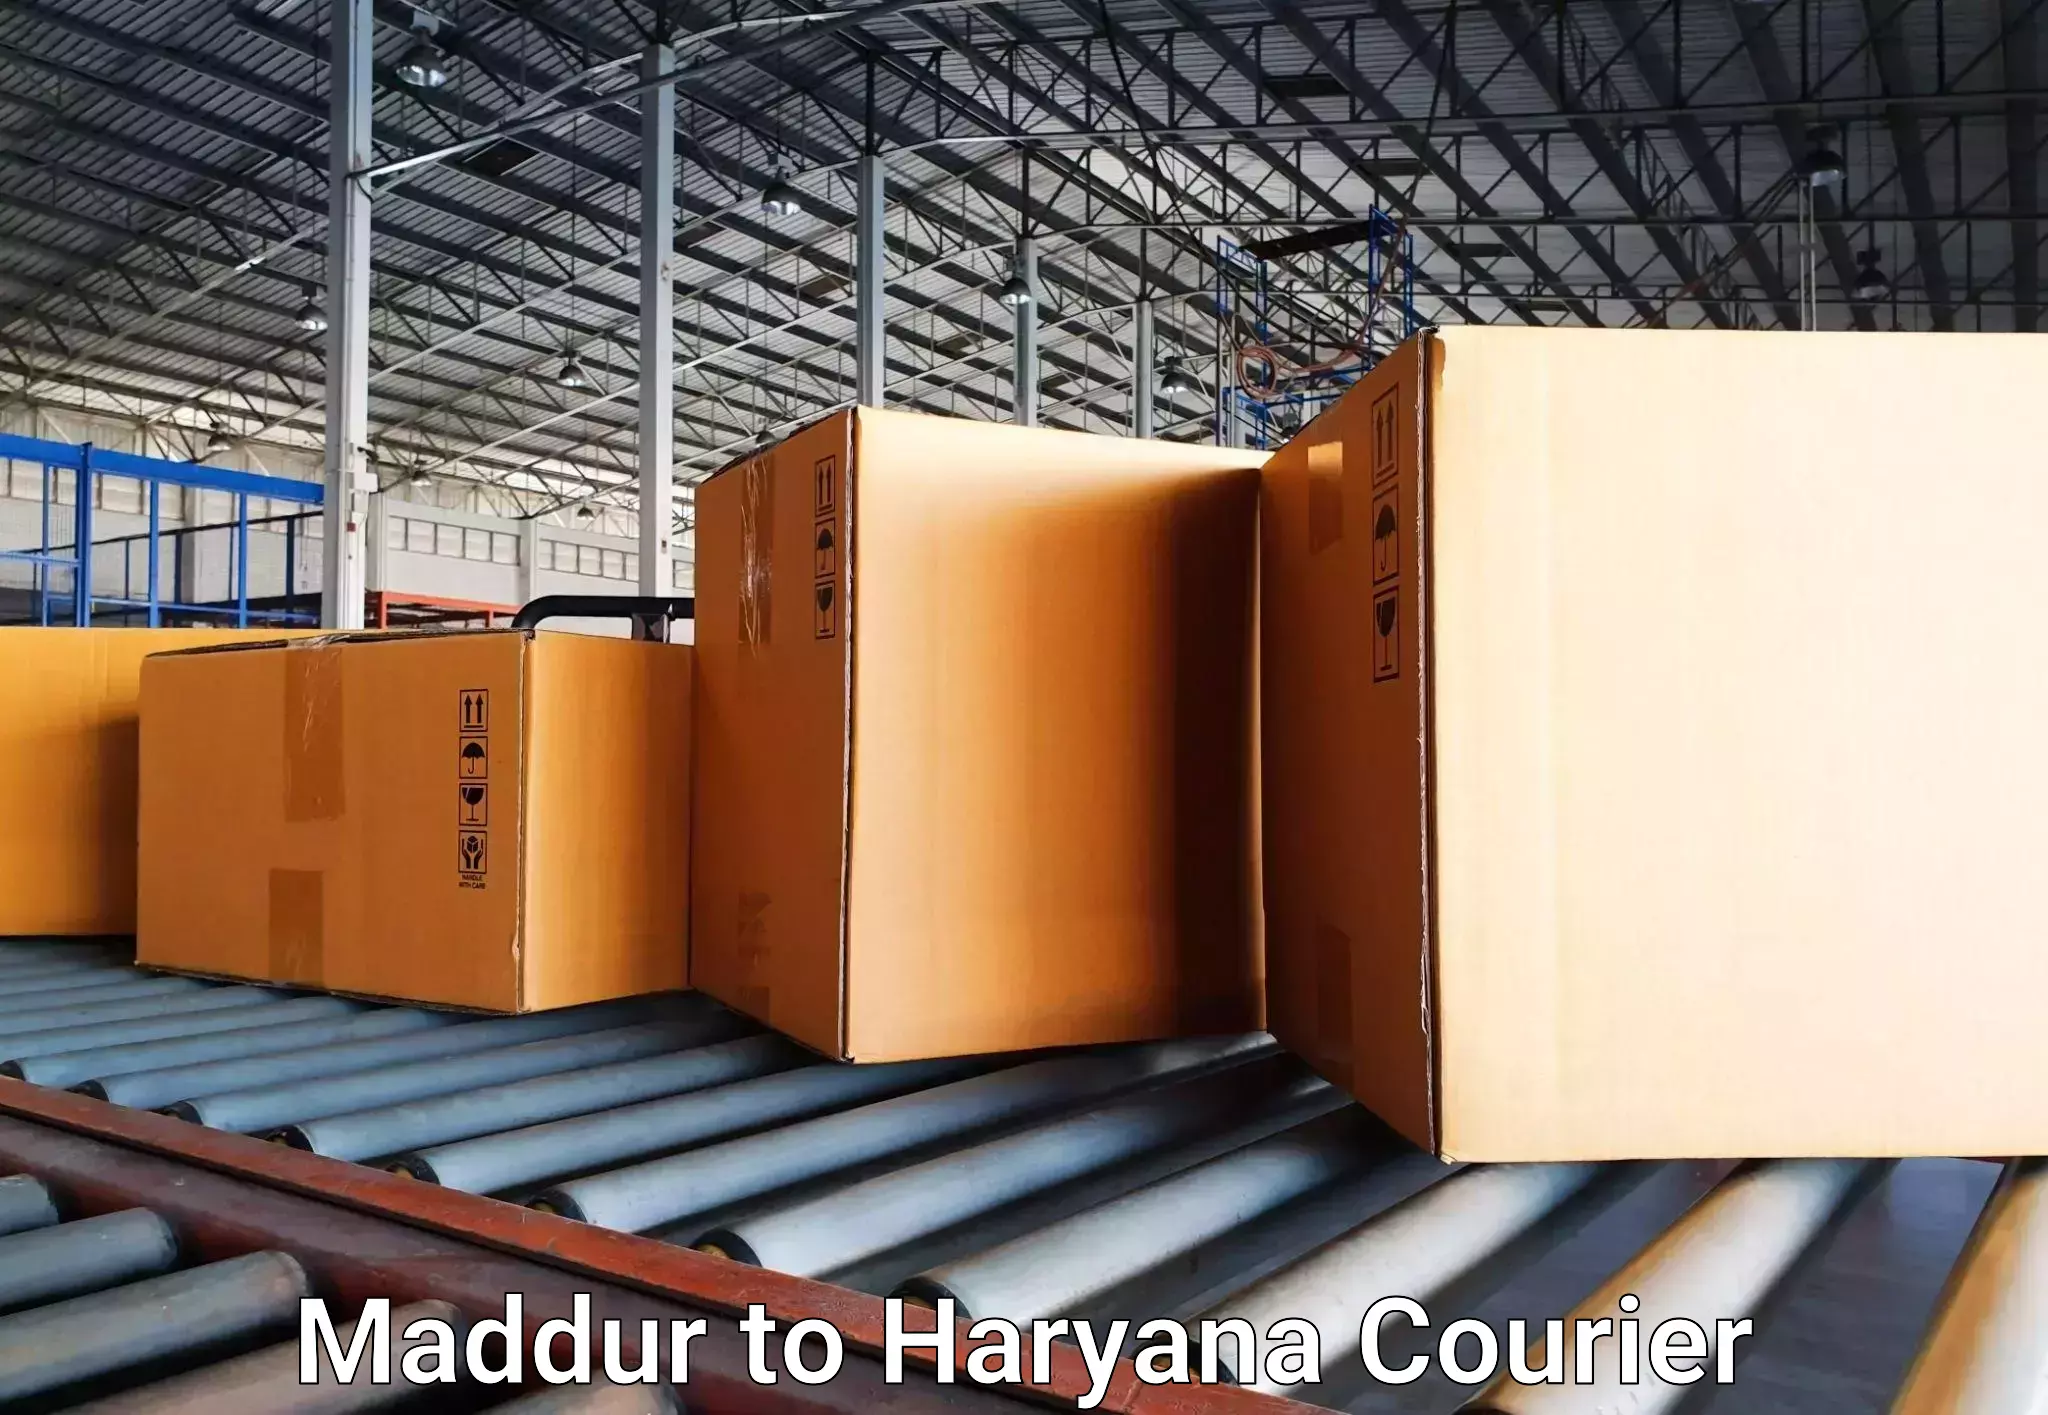 Baggage shipping experts Maddur to Gurgaon